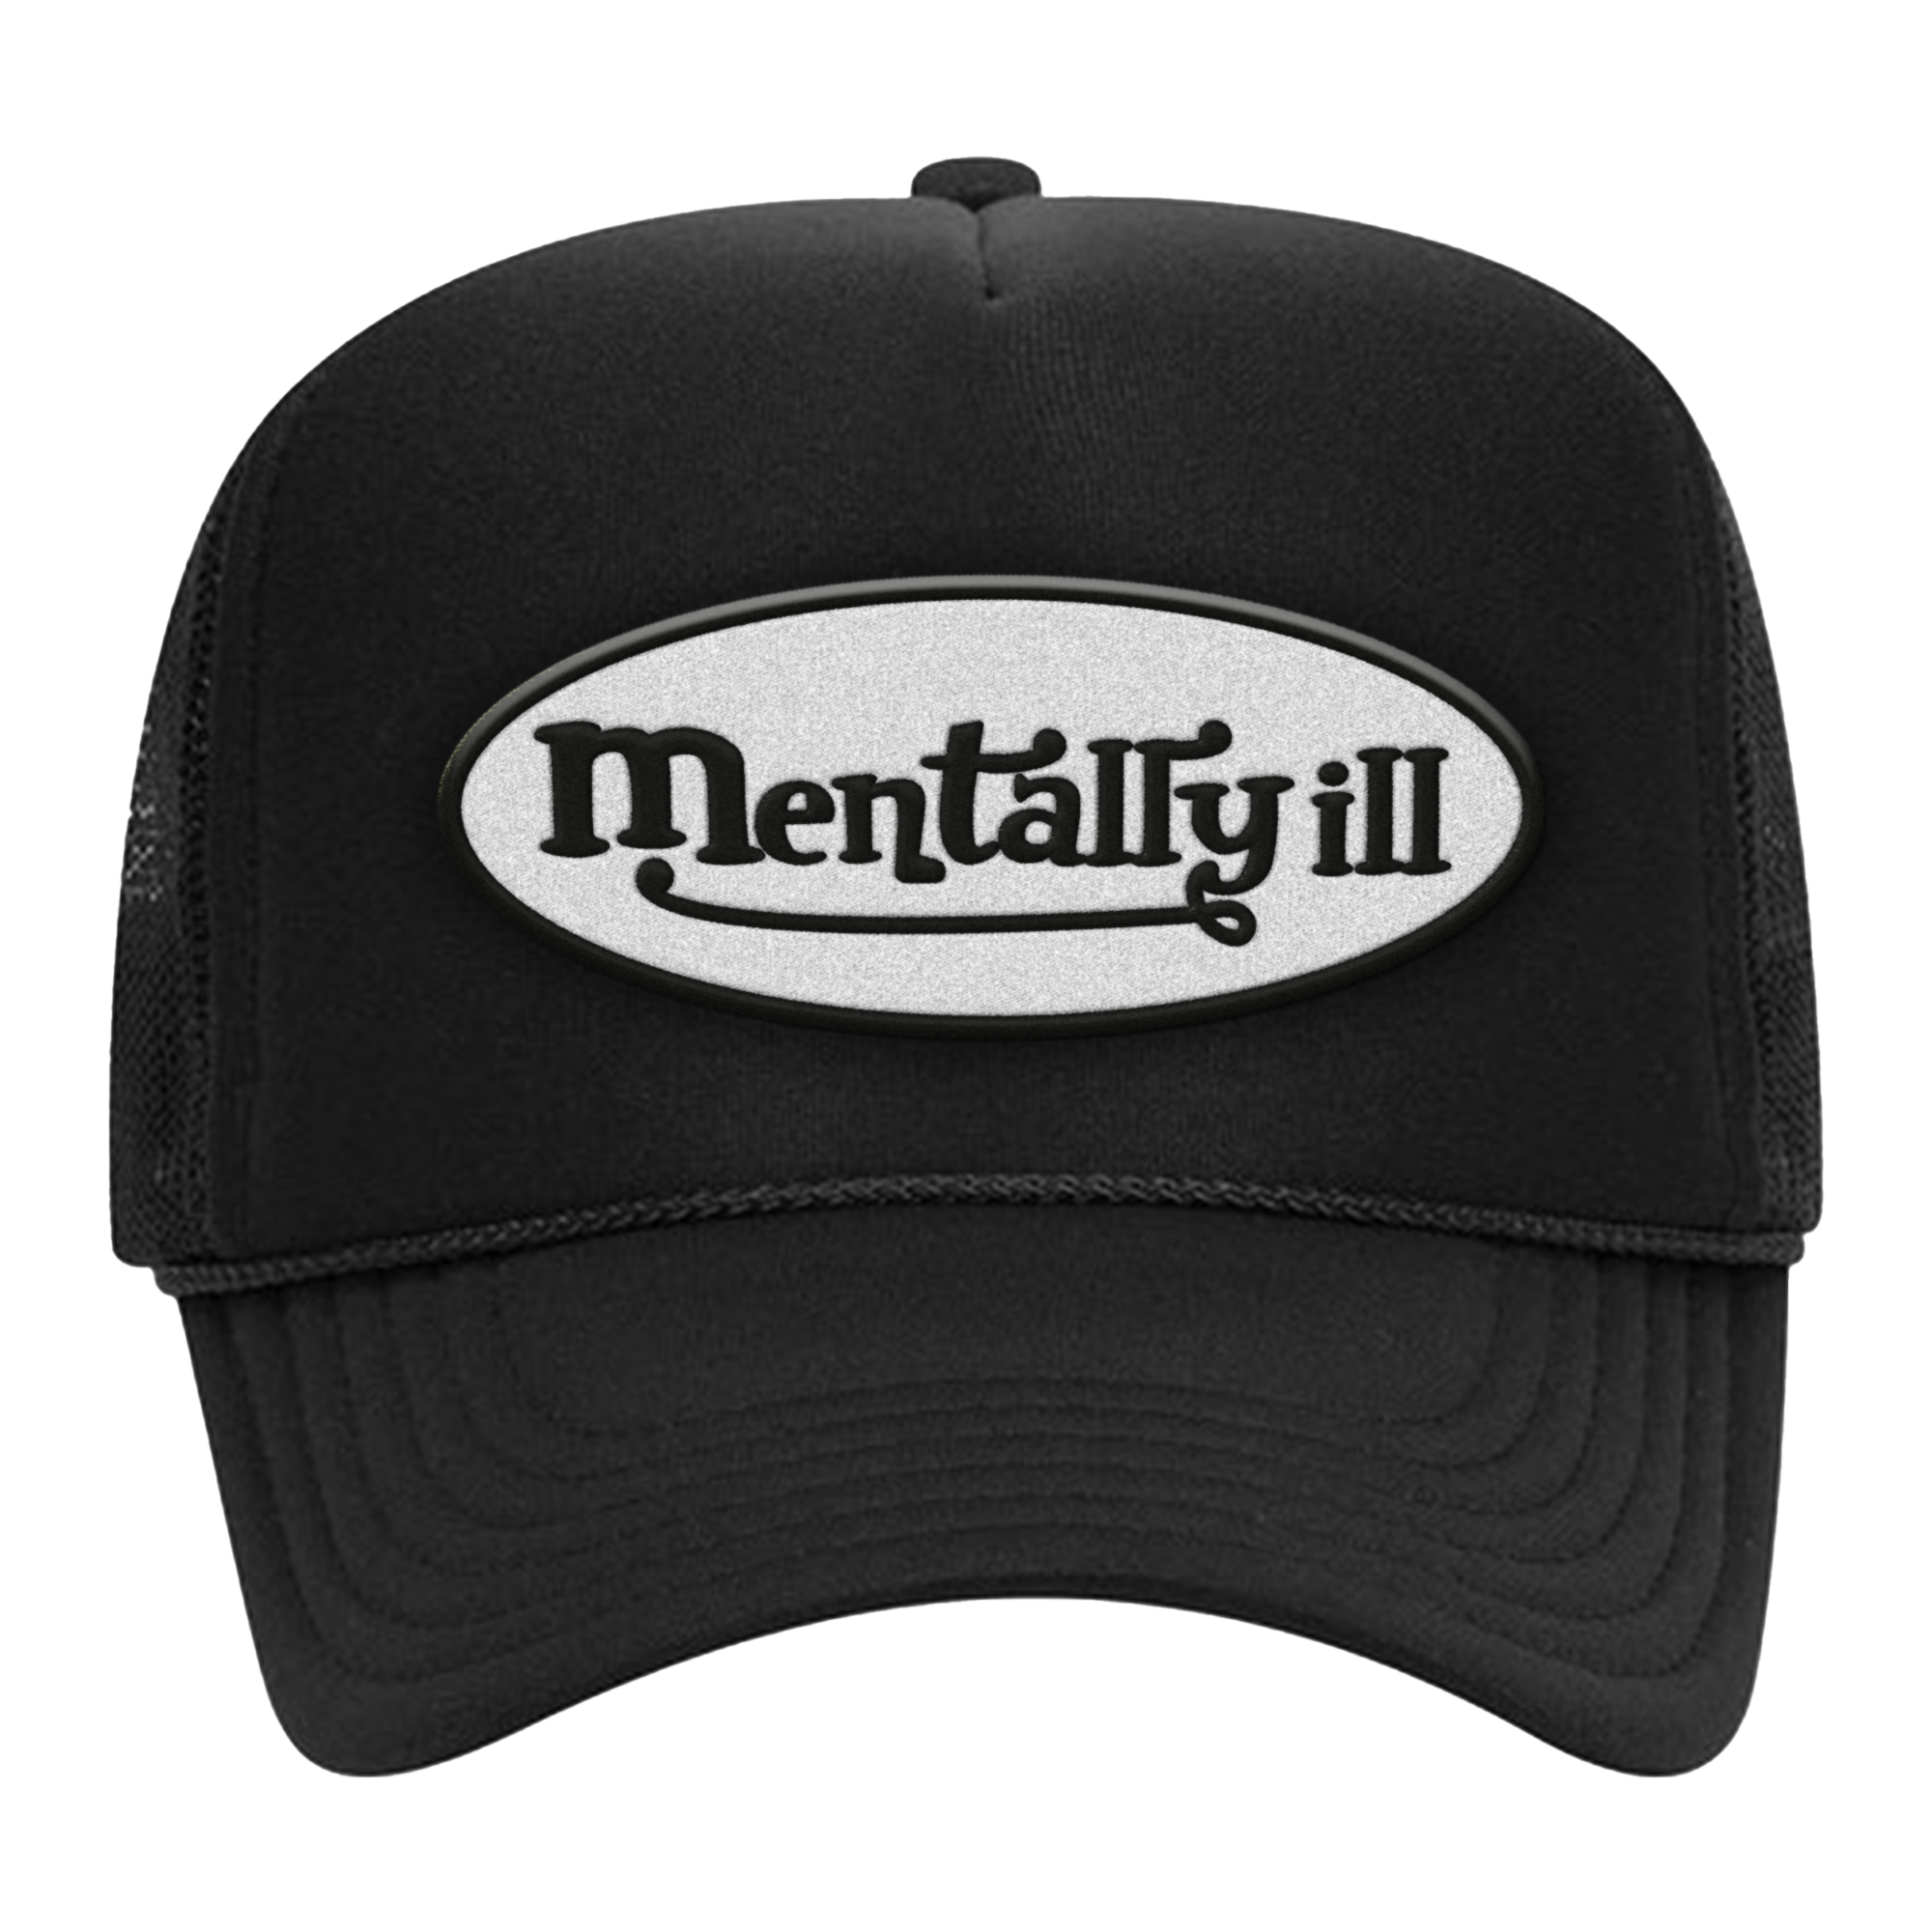 Aryia - Mentally Ill Trucker Hat (Black)